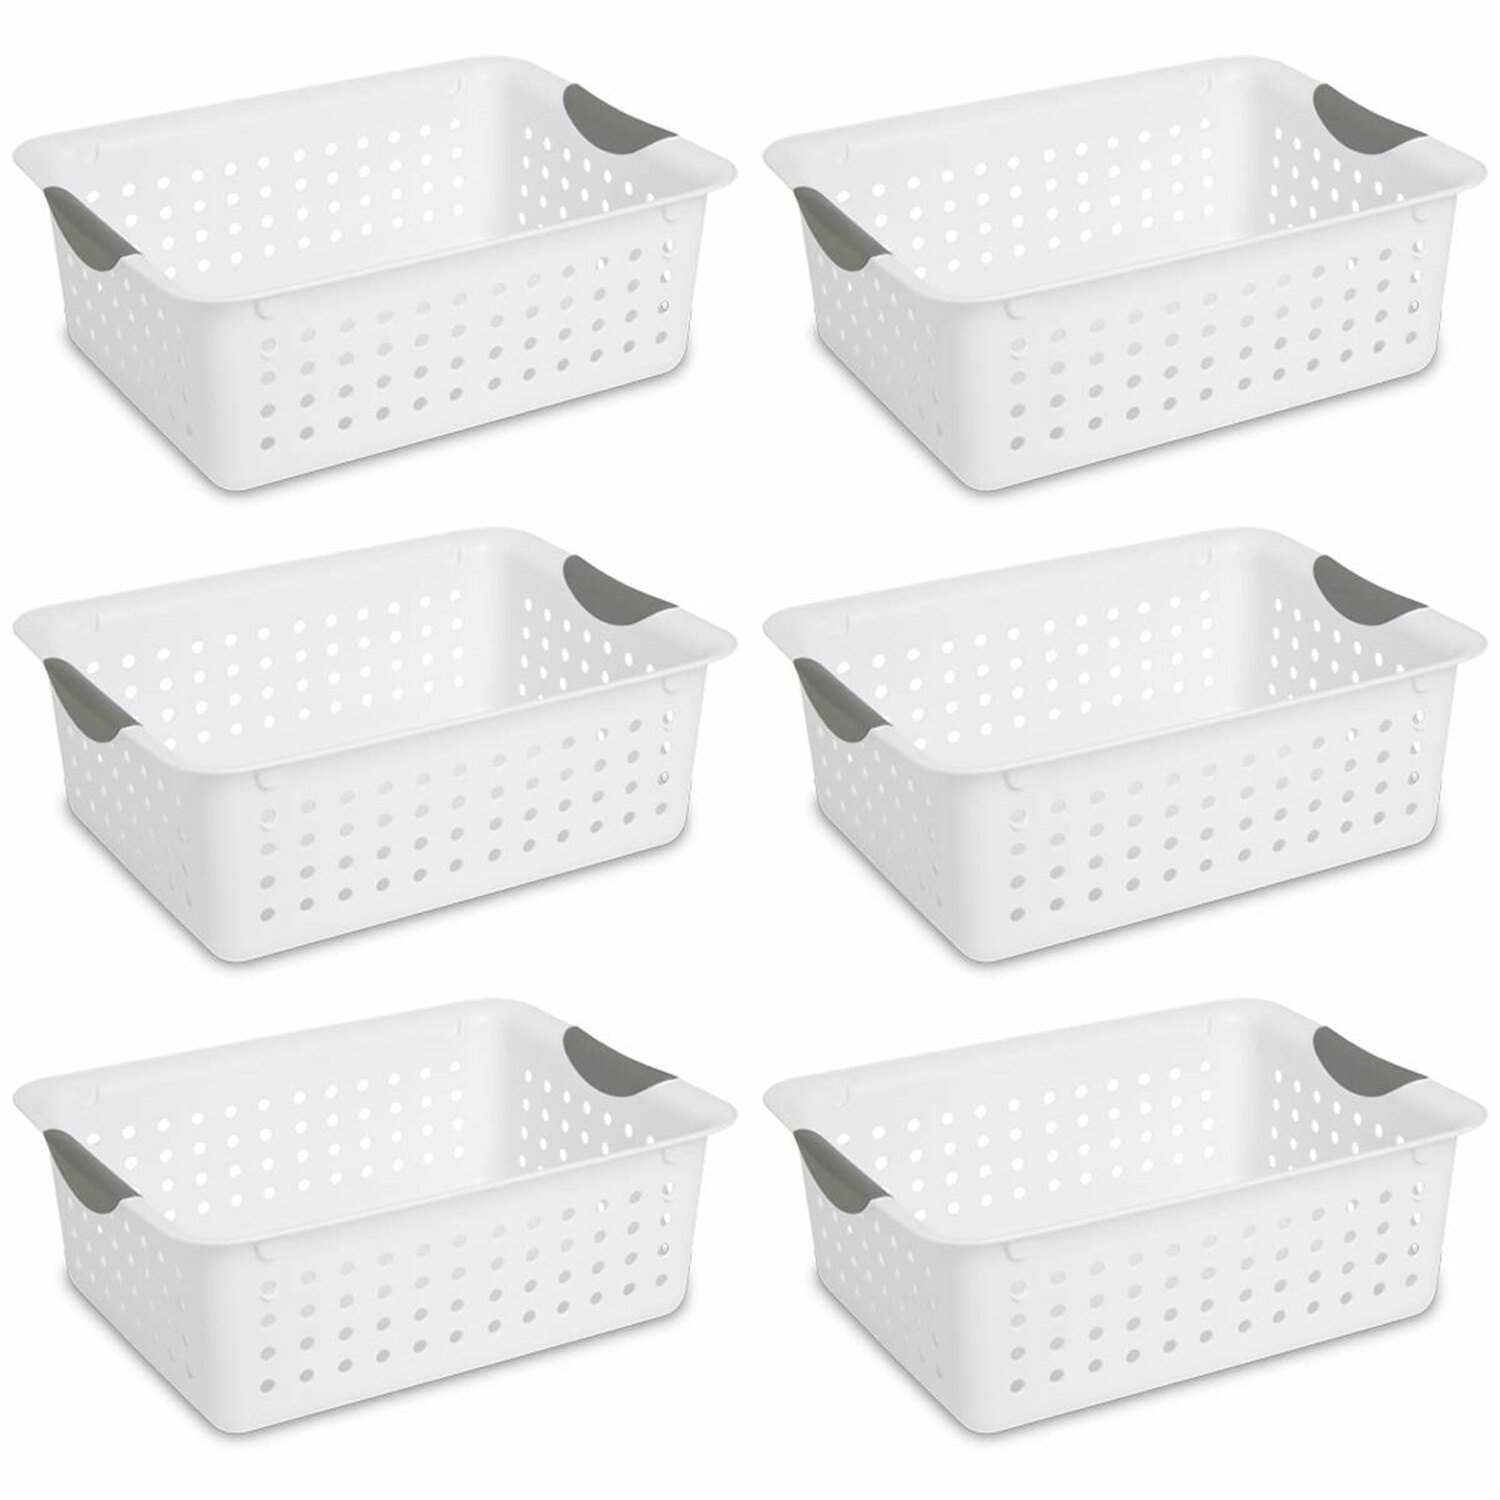 https://assets.wfcdn.com/im/76319881/compr-r85/2394/239485990/sterilite-plastic-storage-organizer-basket-with-handles.jpg